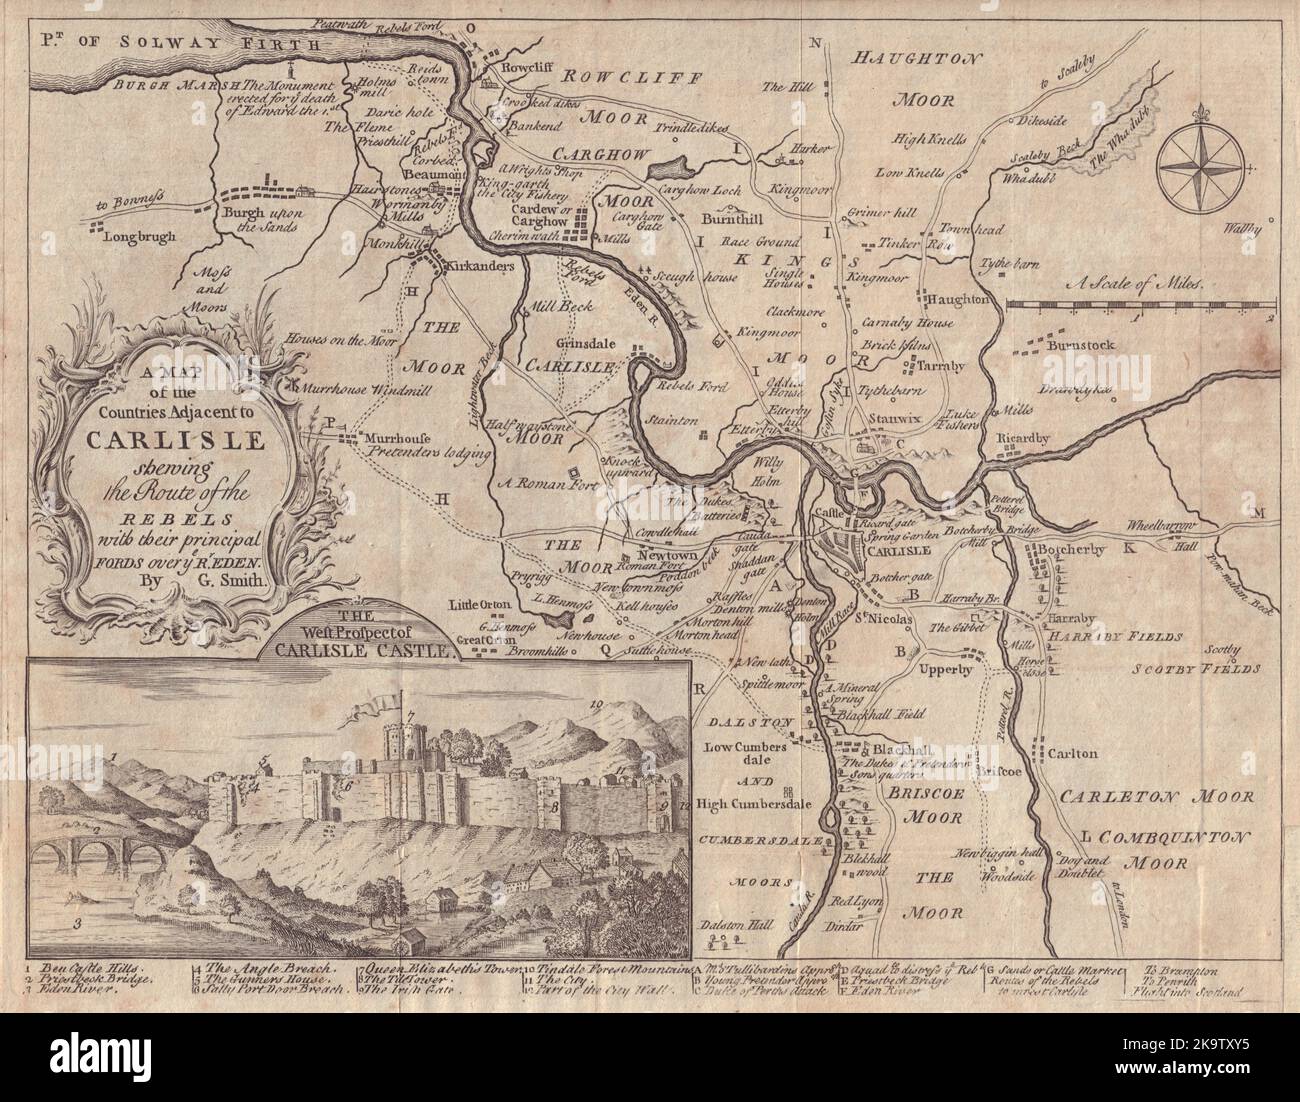 Länder neben Carlisle, die die Route der Rebellen anzeigen. SMITH 1746-Karte Stockfoto